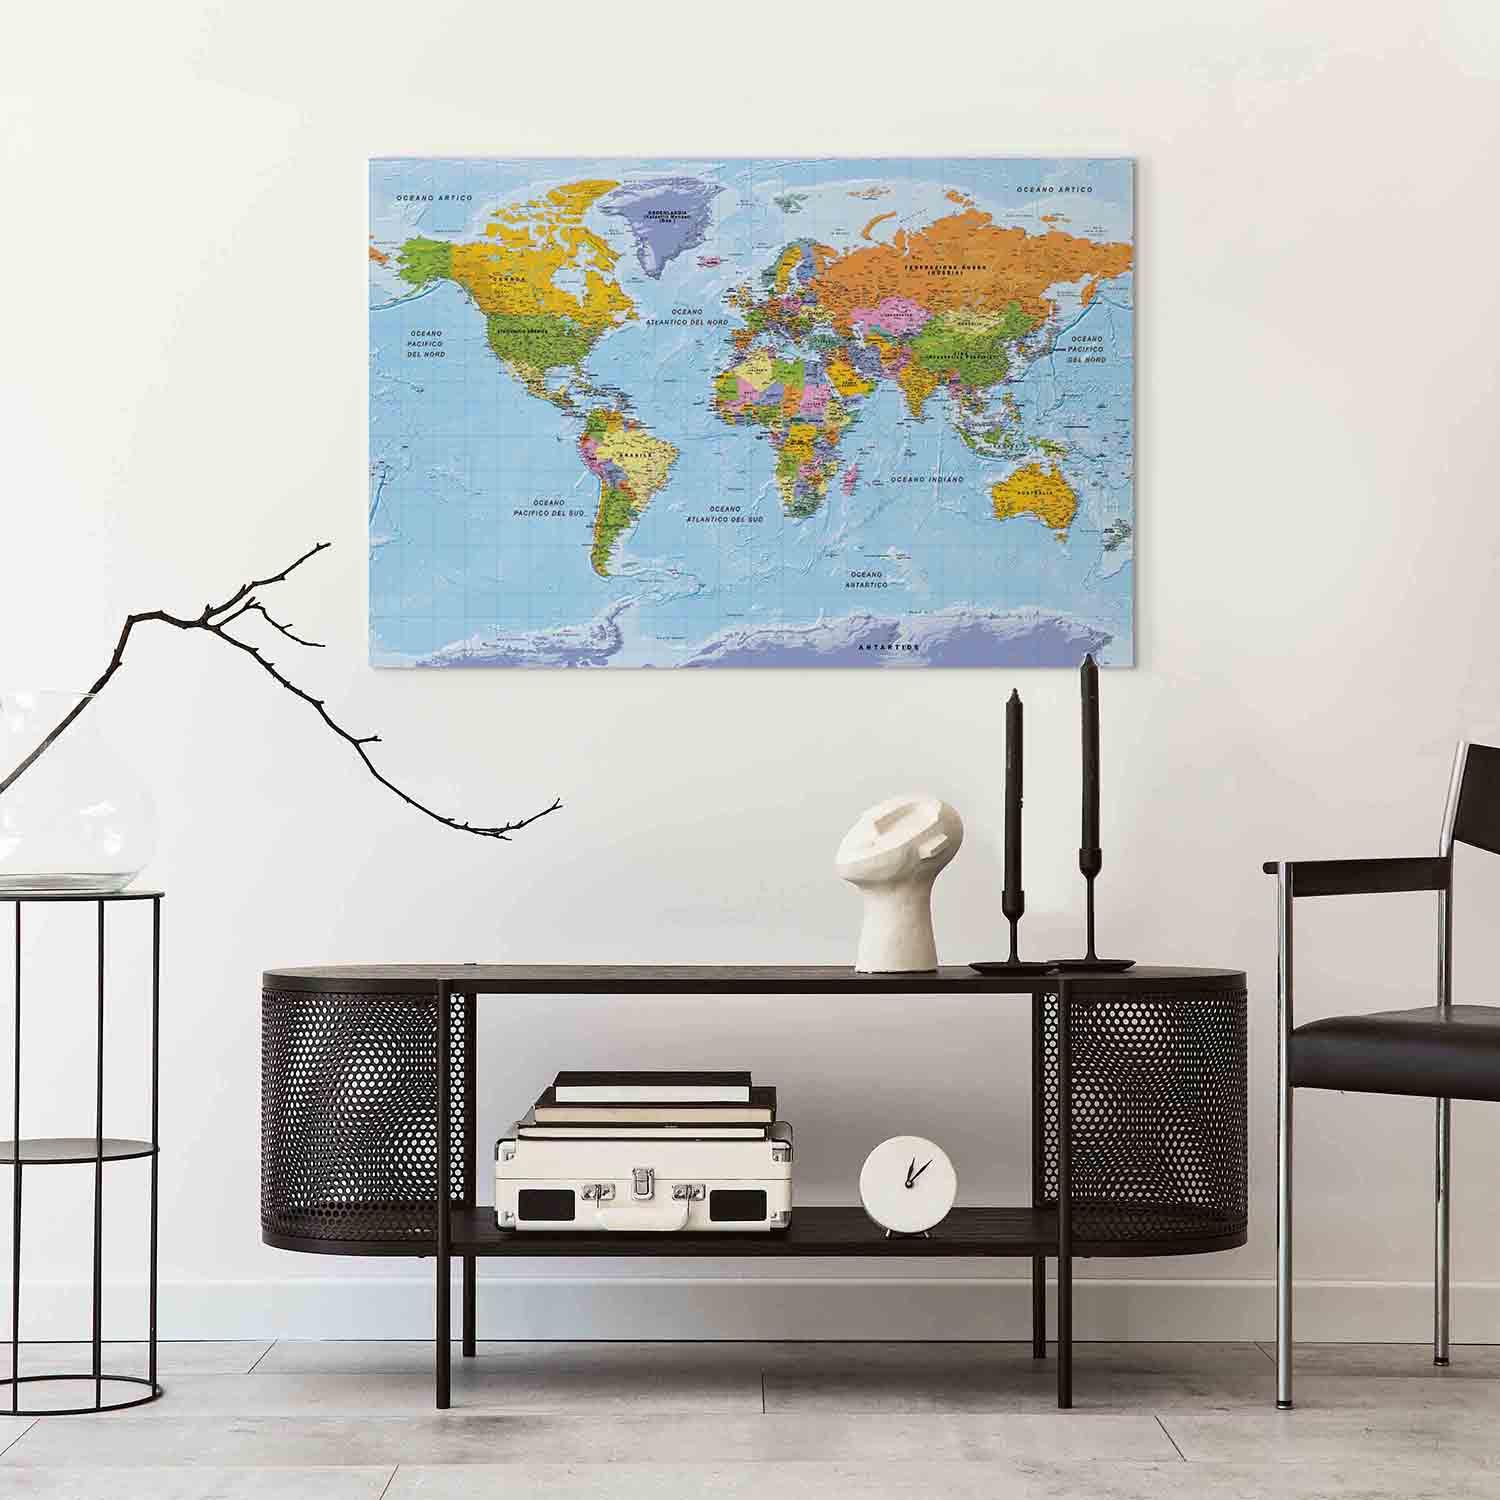 Cuadro Mapa italiano del mundo (1 parte) - continentes en colores vivos